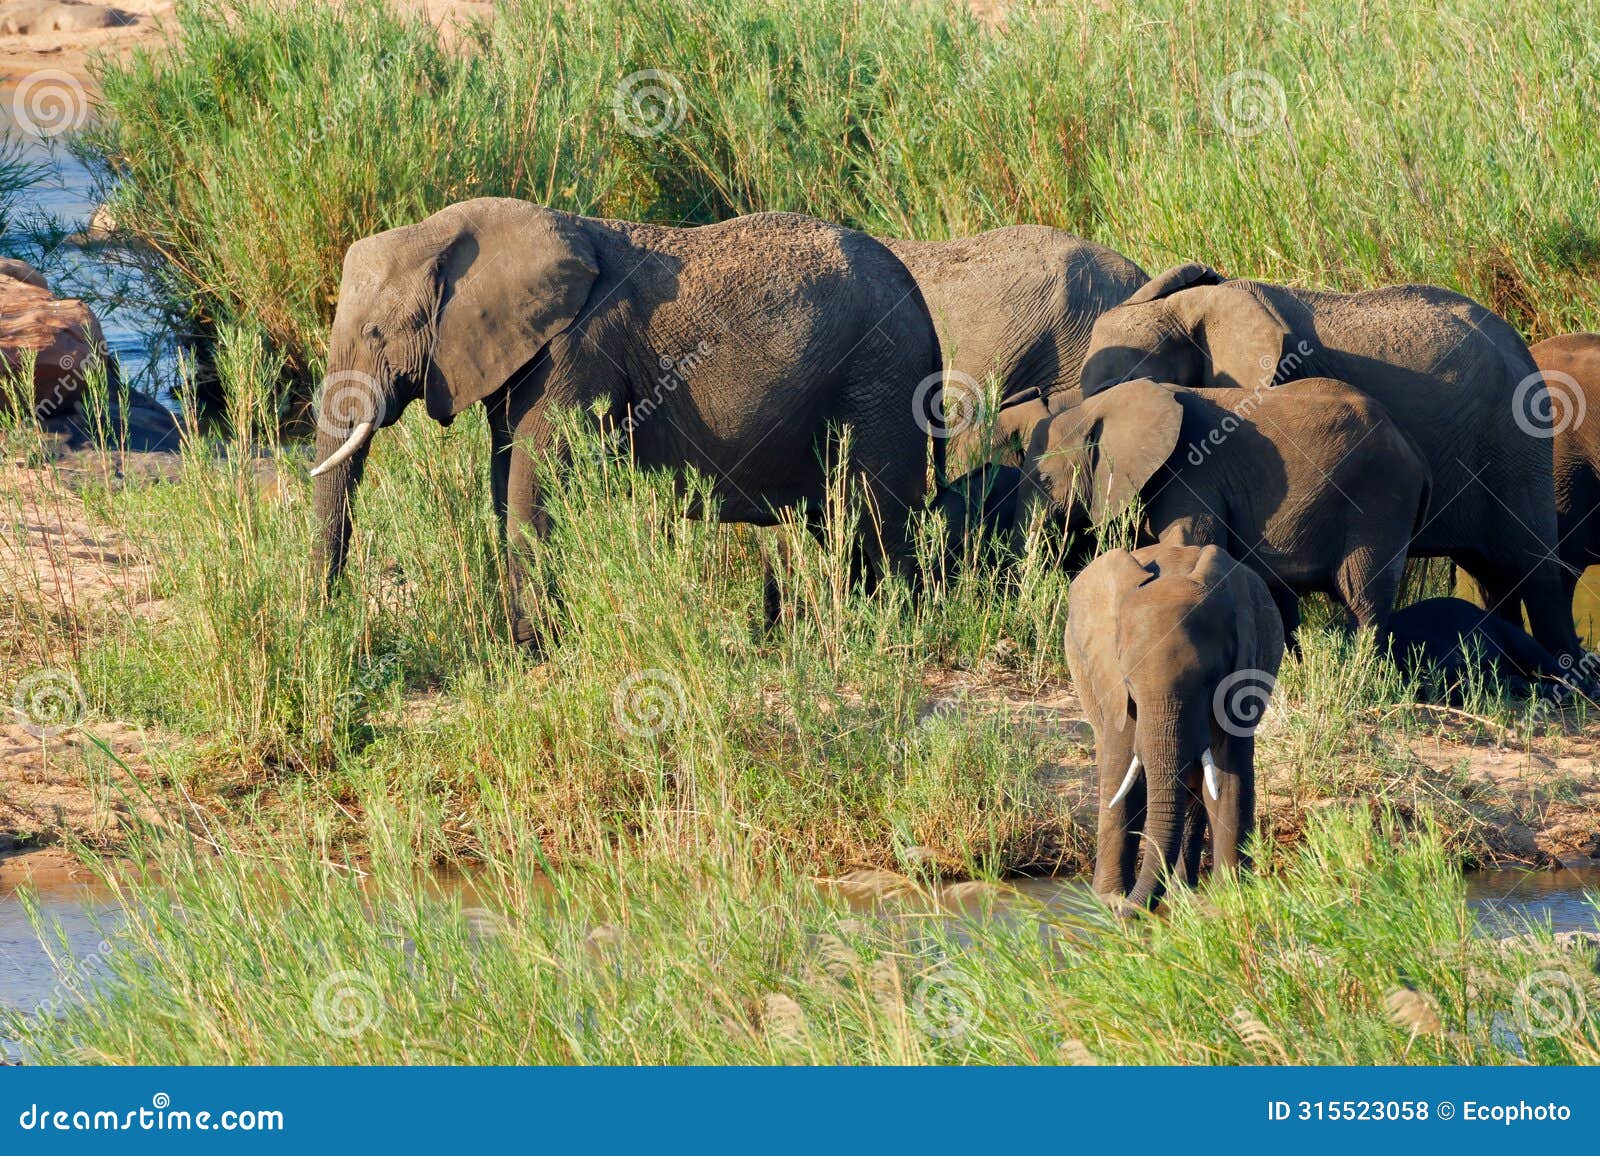 herd of african elephants in natural habitat, kruger national park, south africa